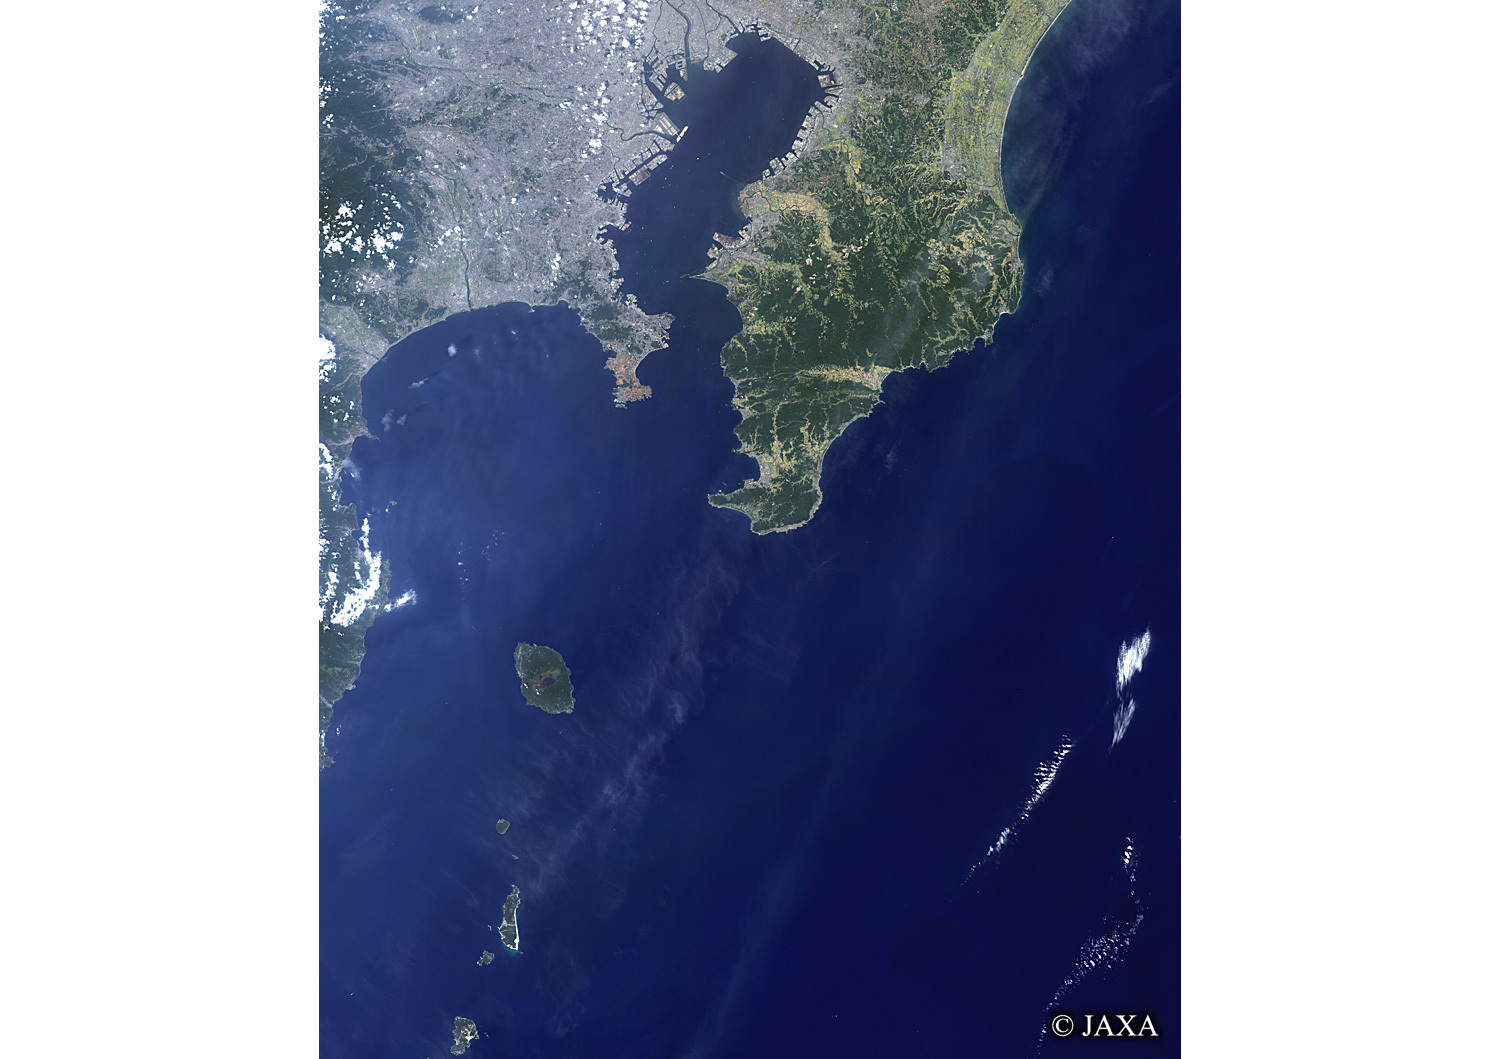 だいちから見た日本の都市 関東湾岸エリア:衛星画像